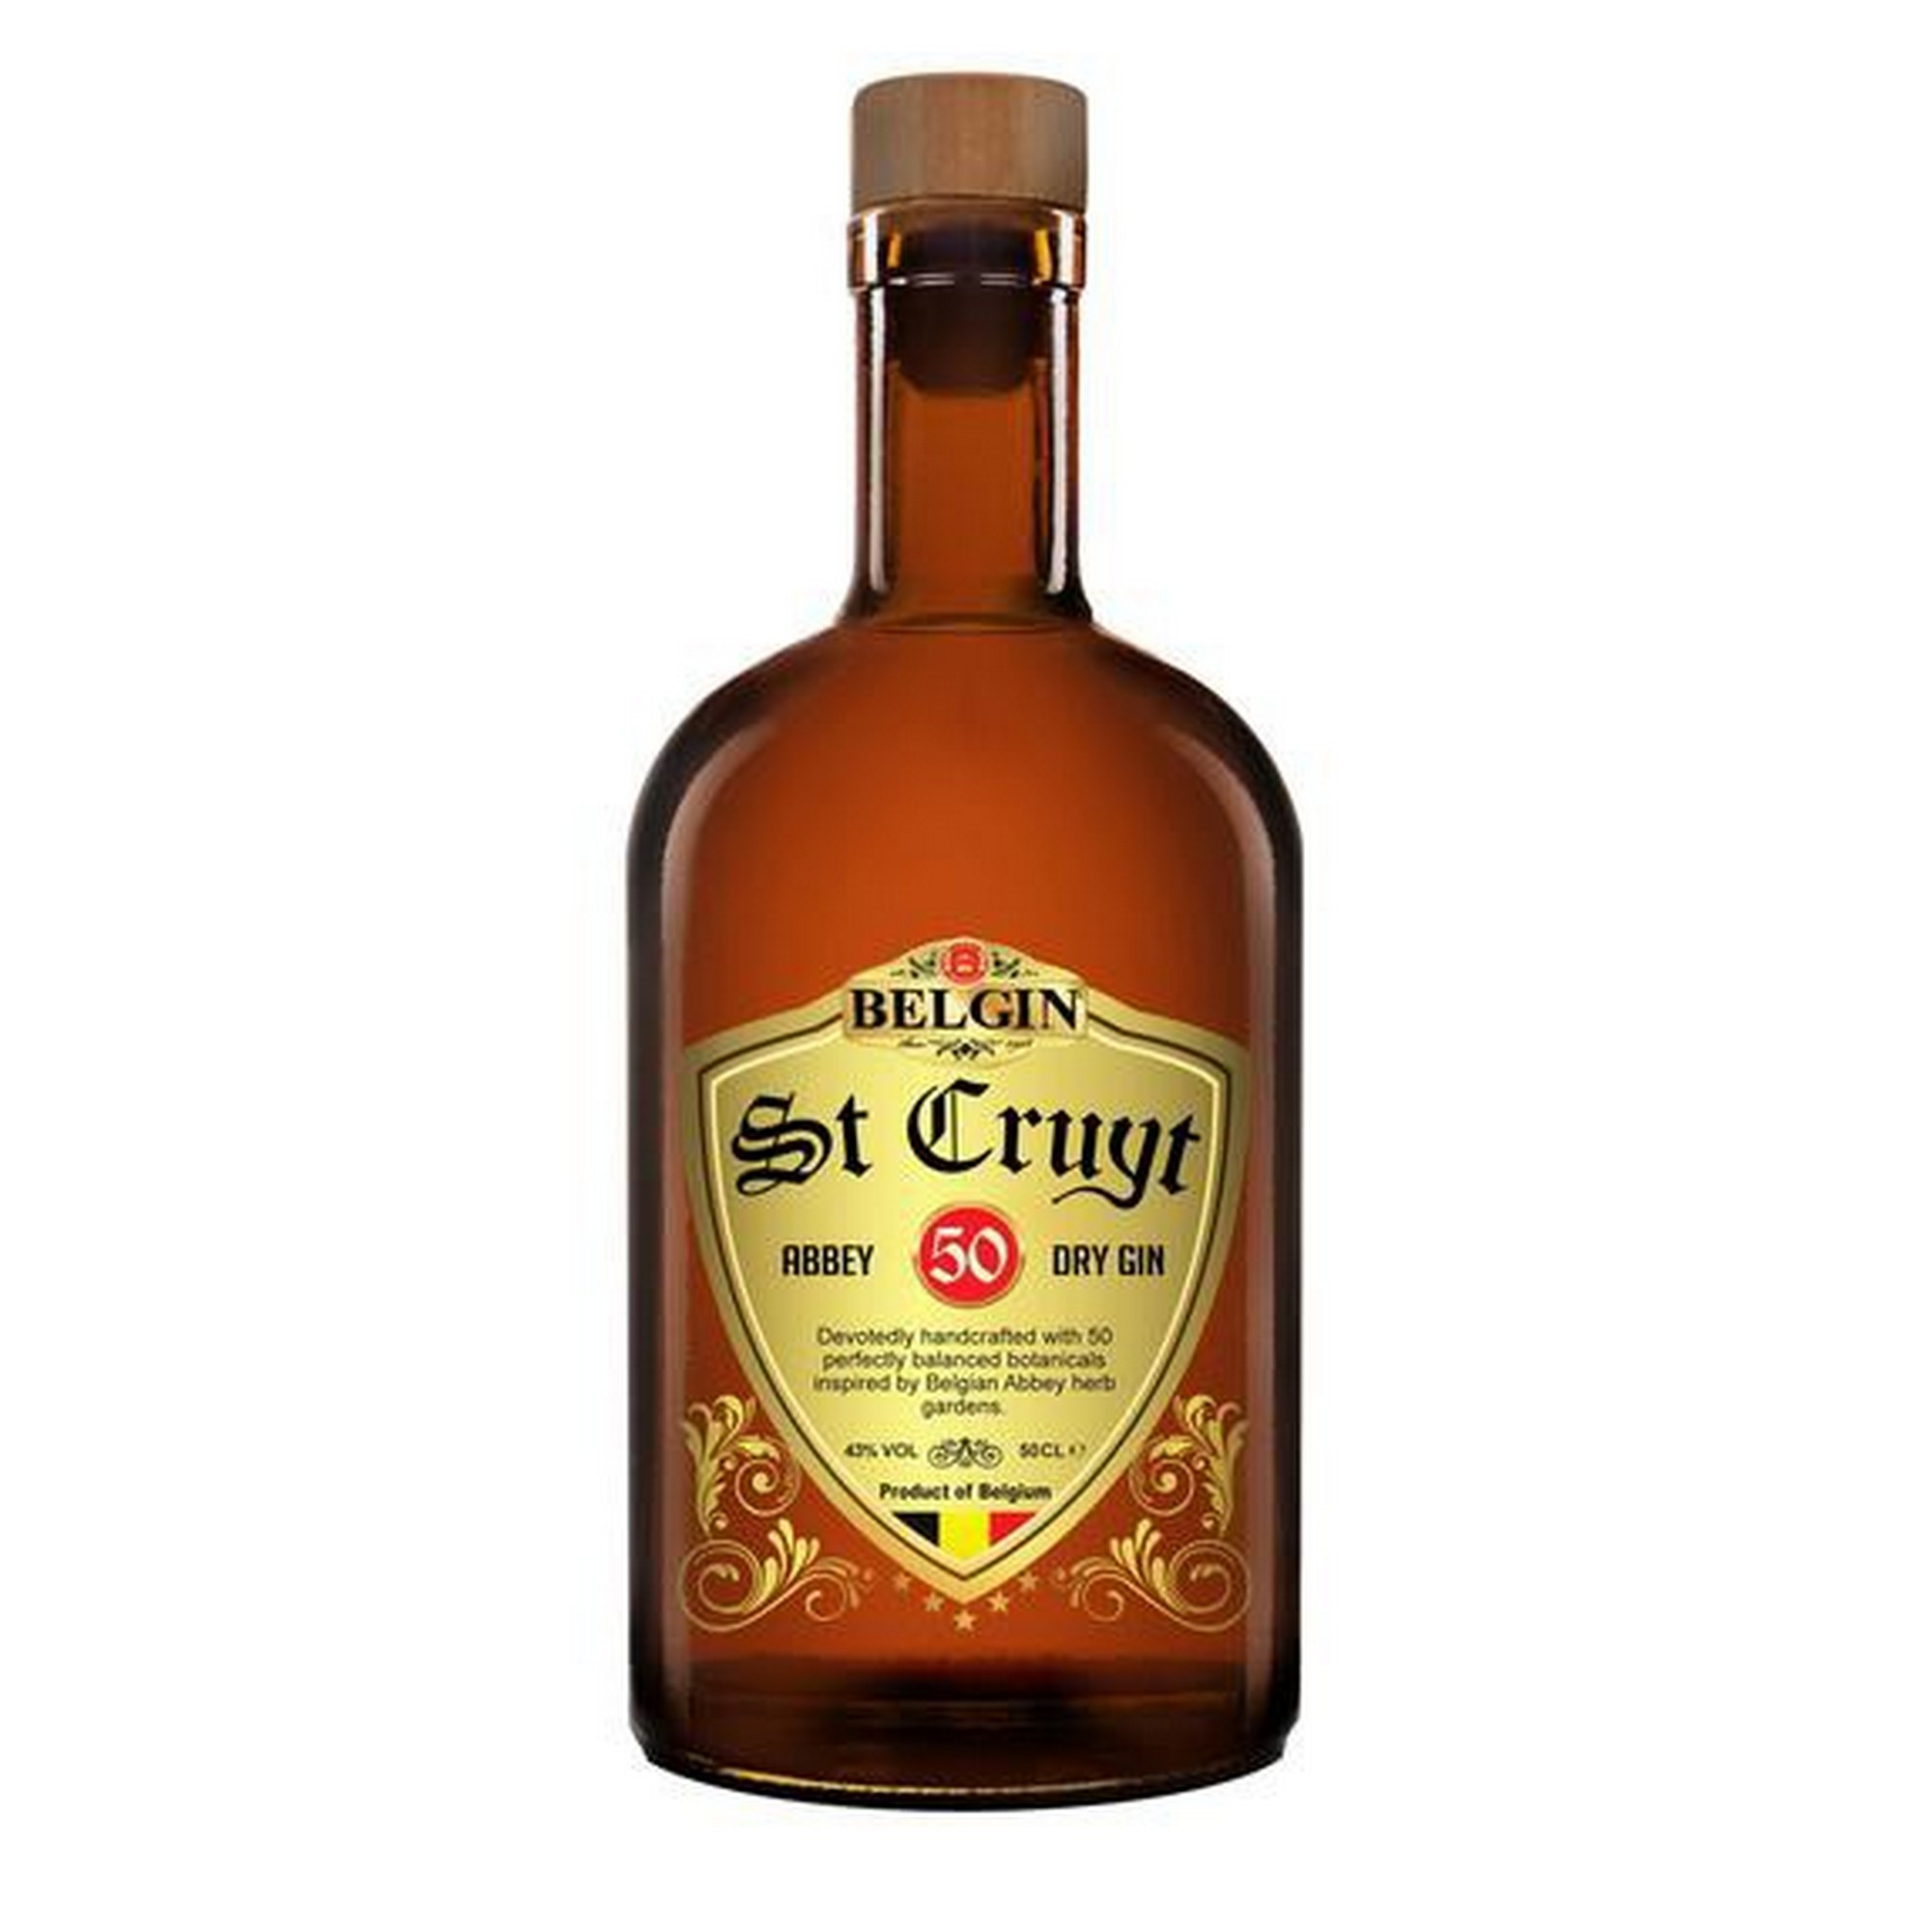 Belgin St-Cruyt